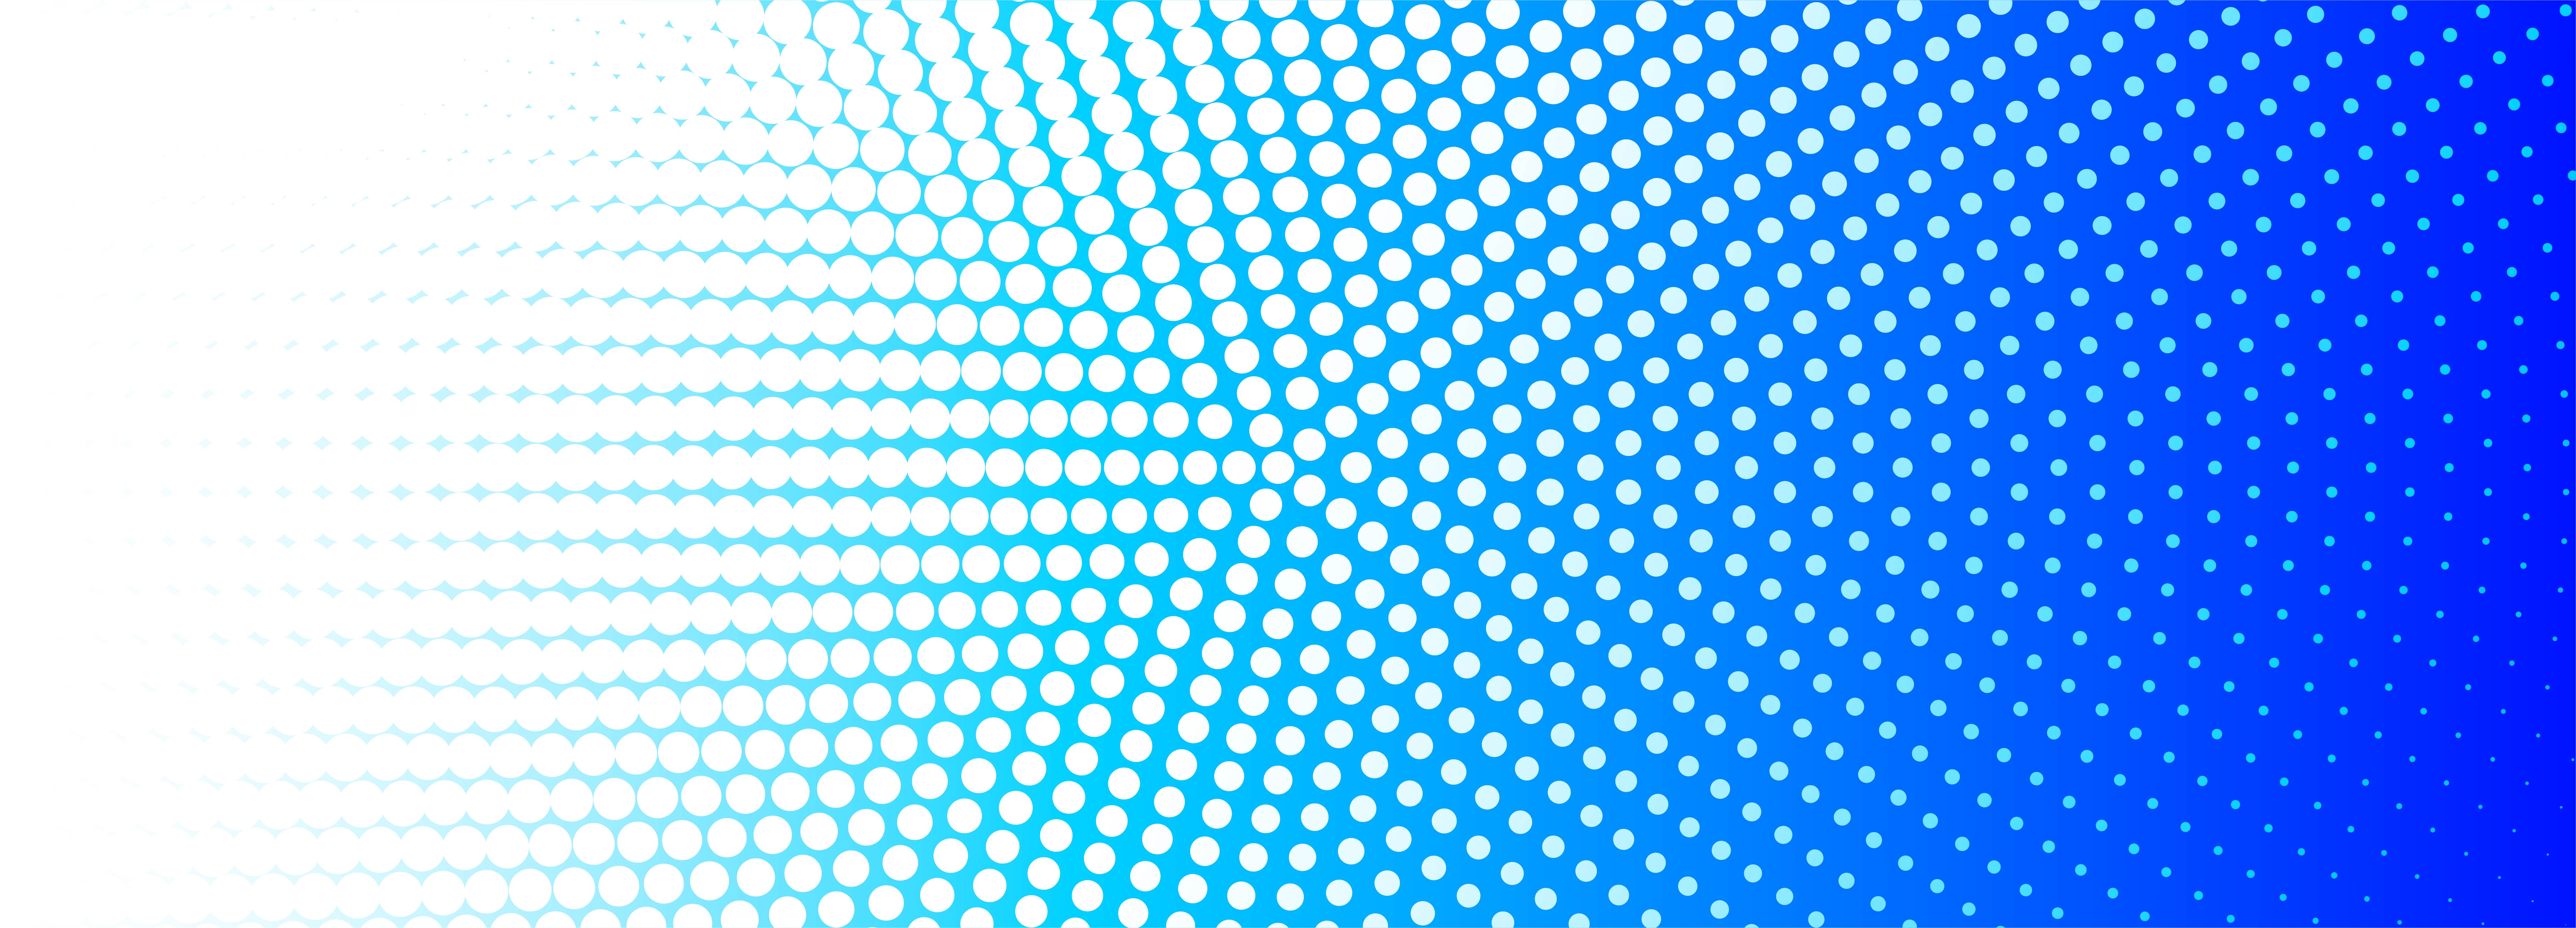 Hình nền chấm tròn màu xanh - Sự kết hợp độc đáo giữa màu xanh và chấm tròn sẽ mang đến cho bạn sự nổi bật và tươi mới cho blog của bạn. Hãy xem hình ảnh này để thấy sự kết hợp đầy mê hoặc này!